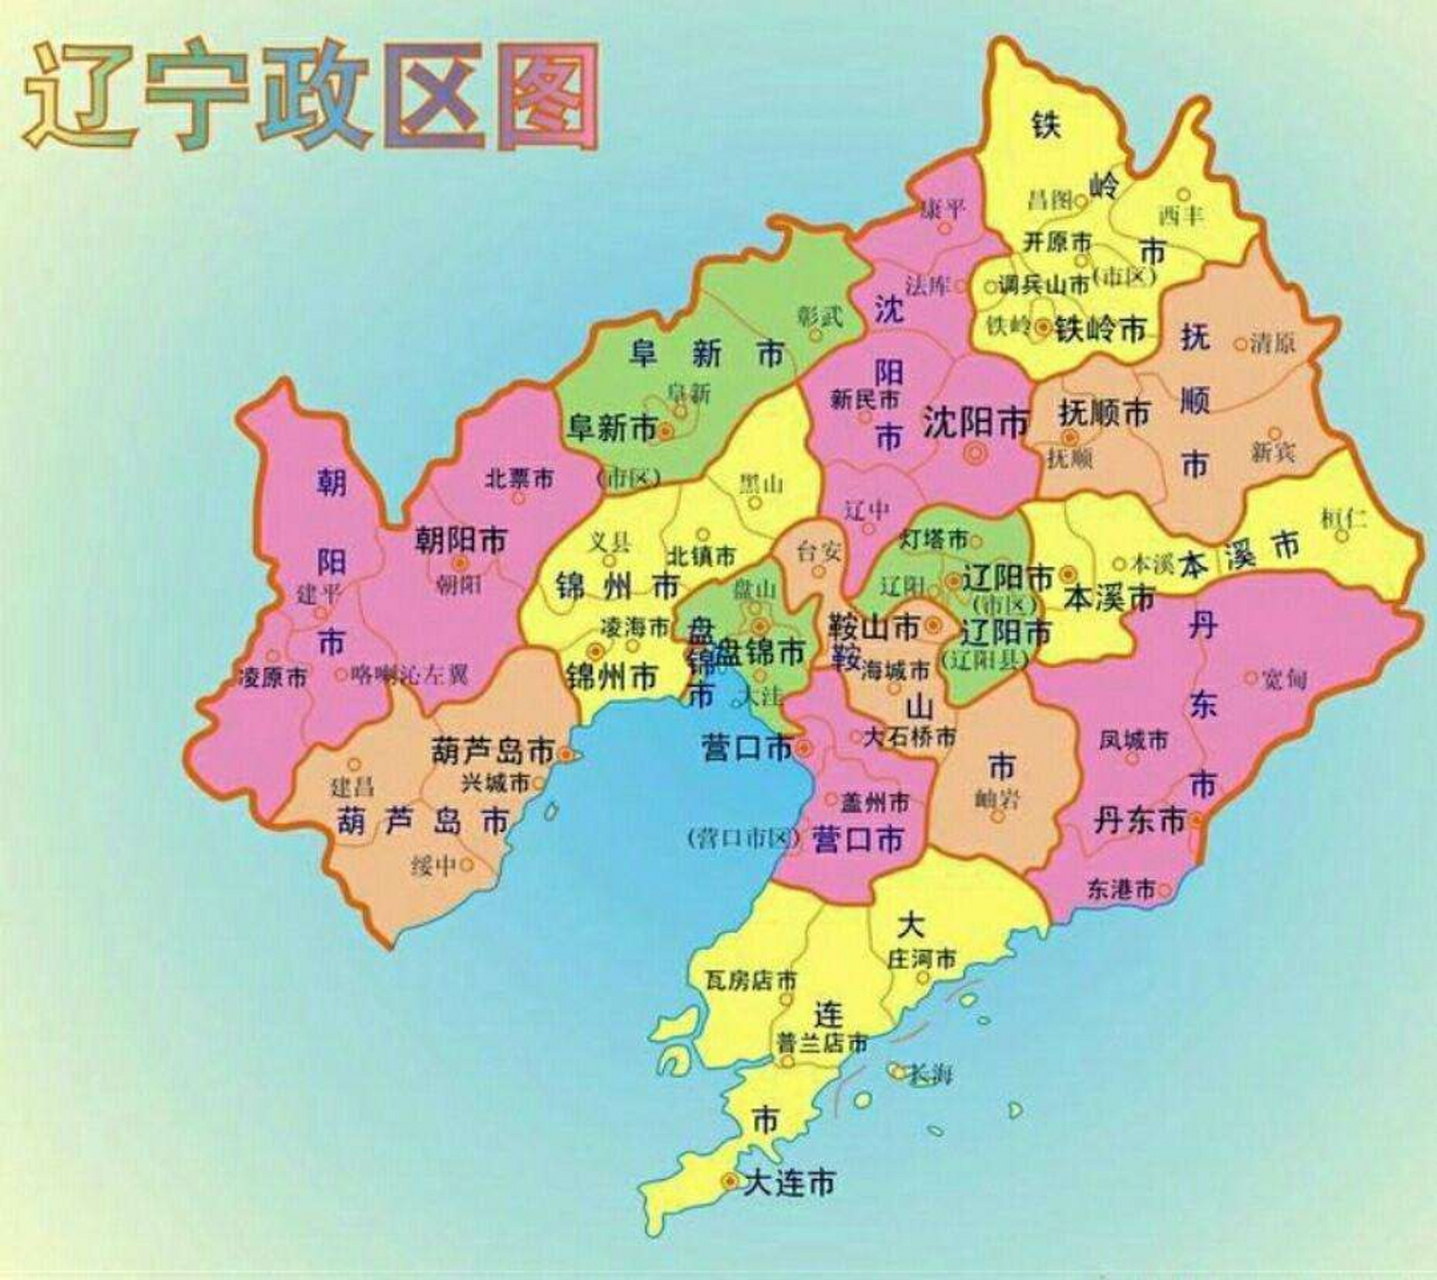 辽宁省的行政区划给人的第一印象就是乱,尤其是辽宁中部本溪,辽阳